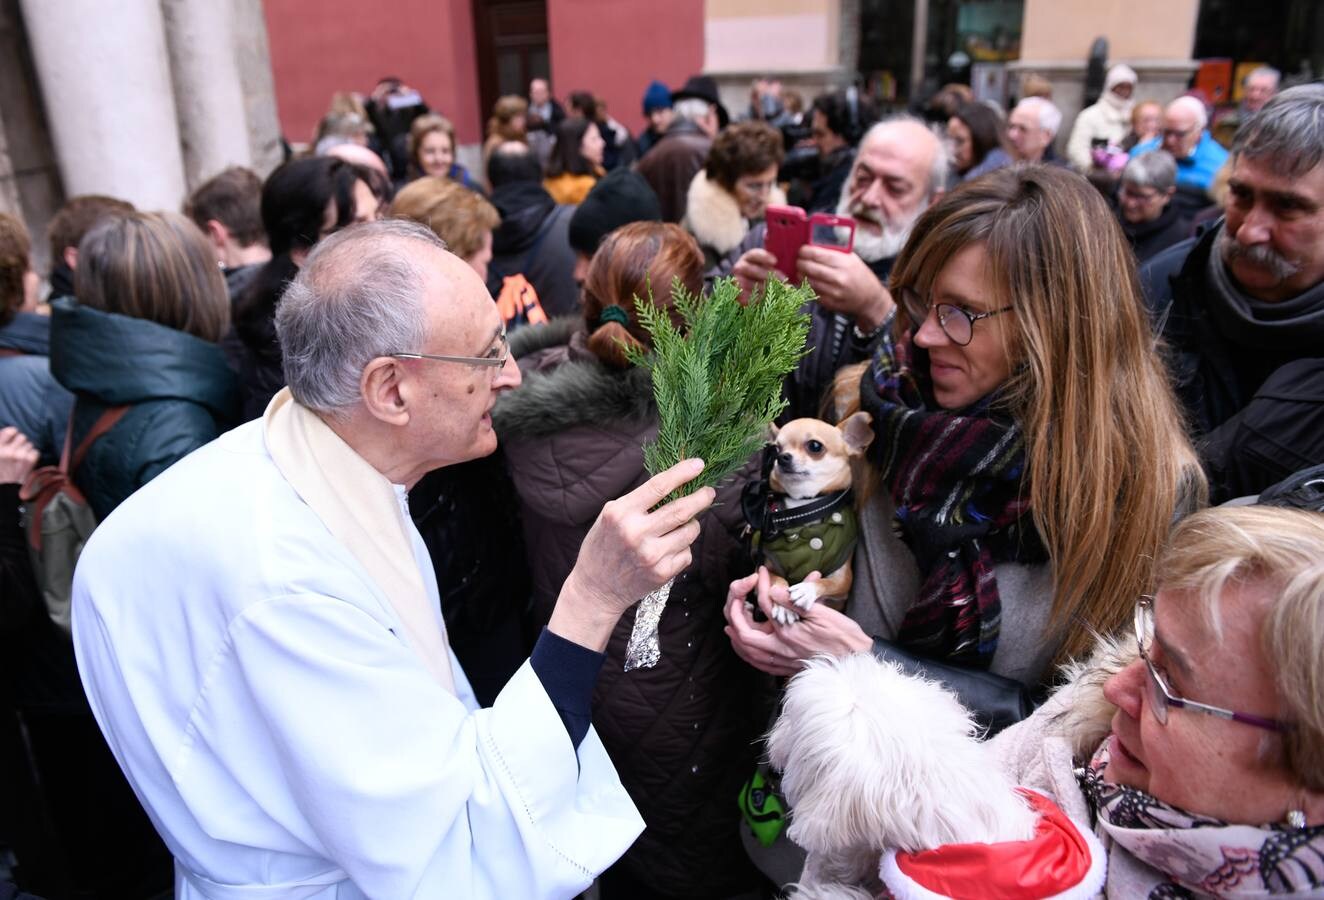 Fotos: Las mascotas reciben la bendición de San Antón en Valladolid